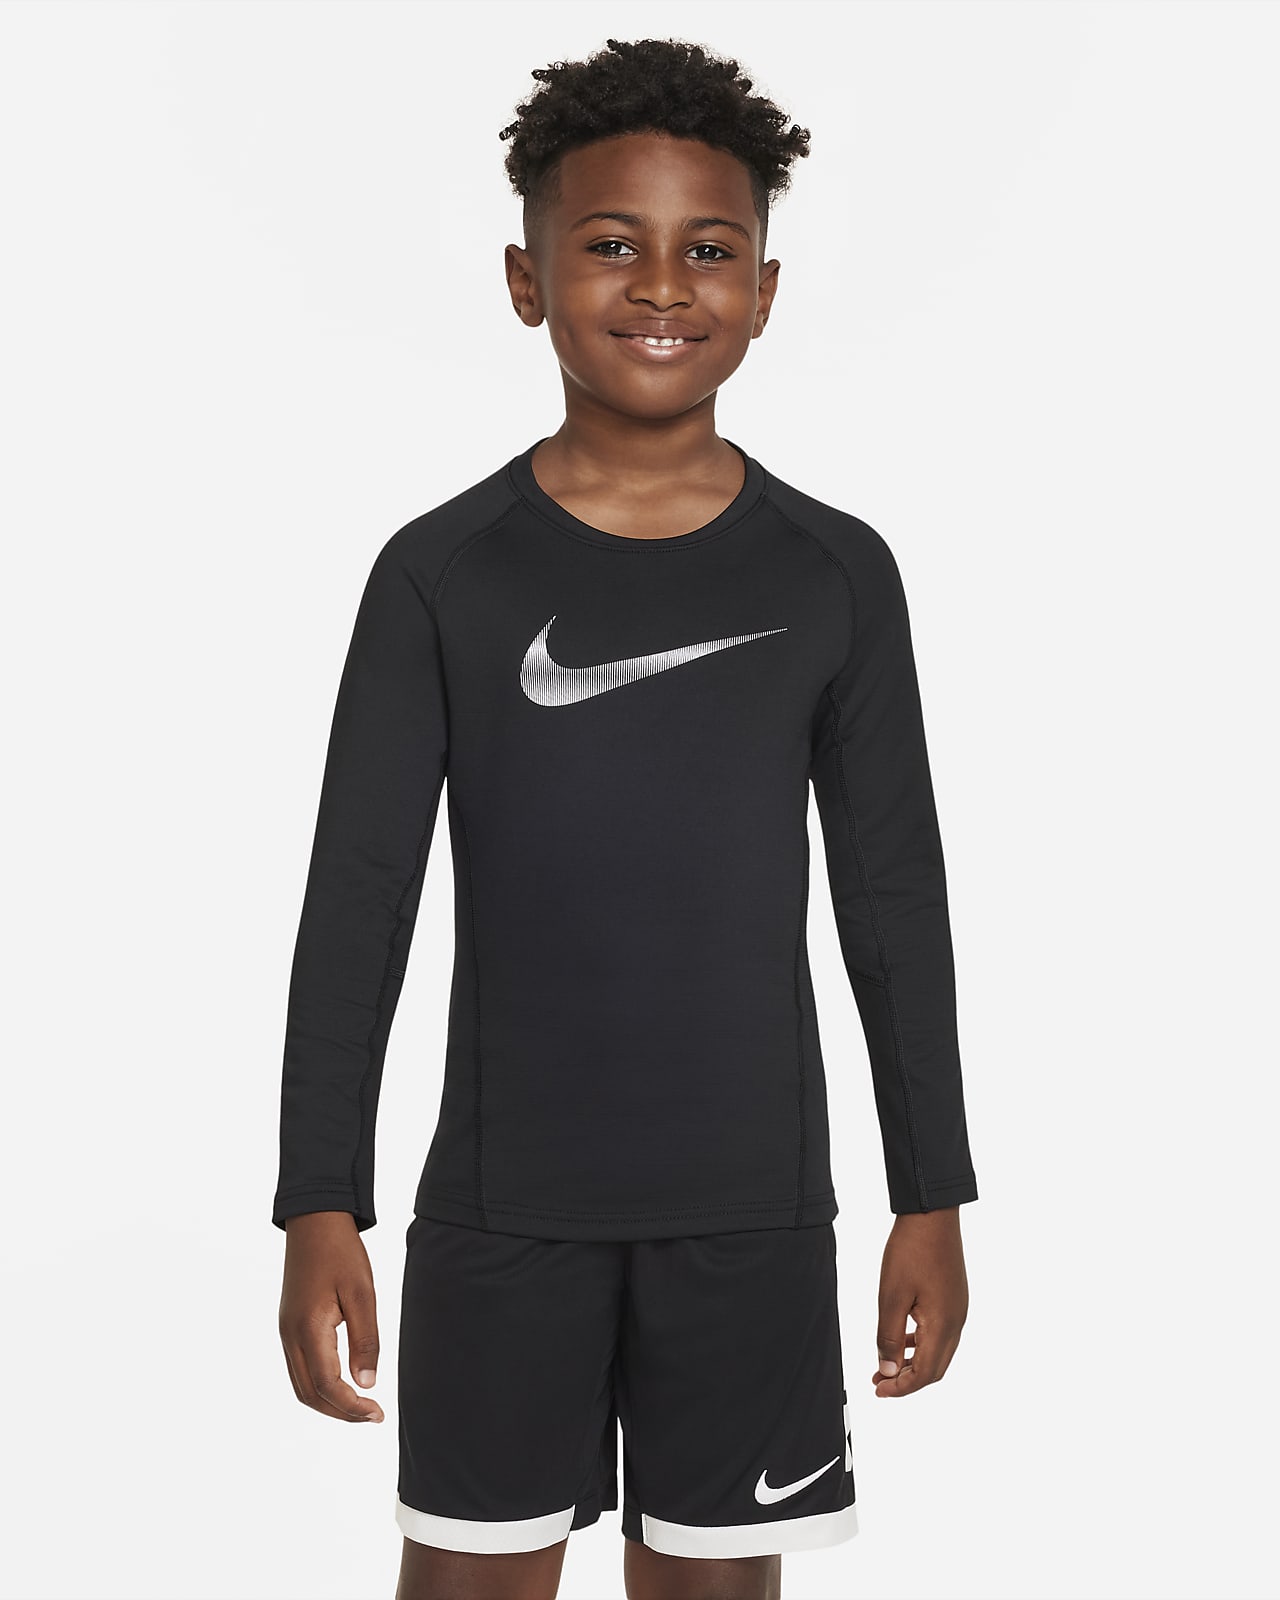 Långärmad tröja Nike Pro Warm för ungdom (killar)